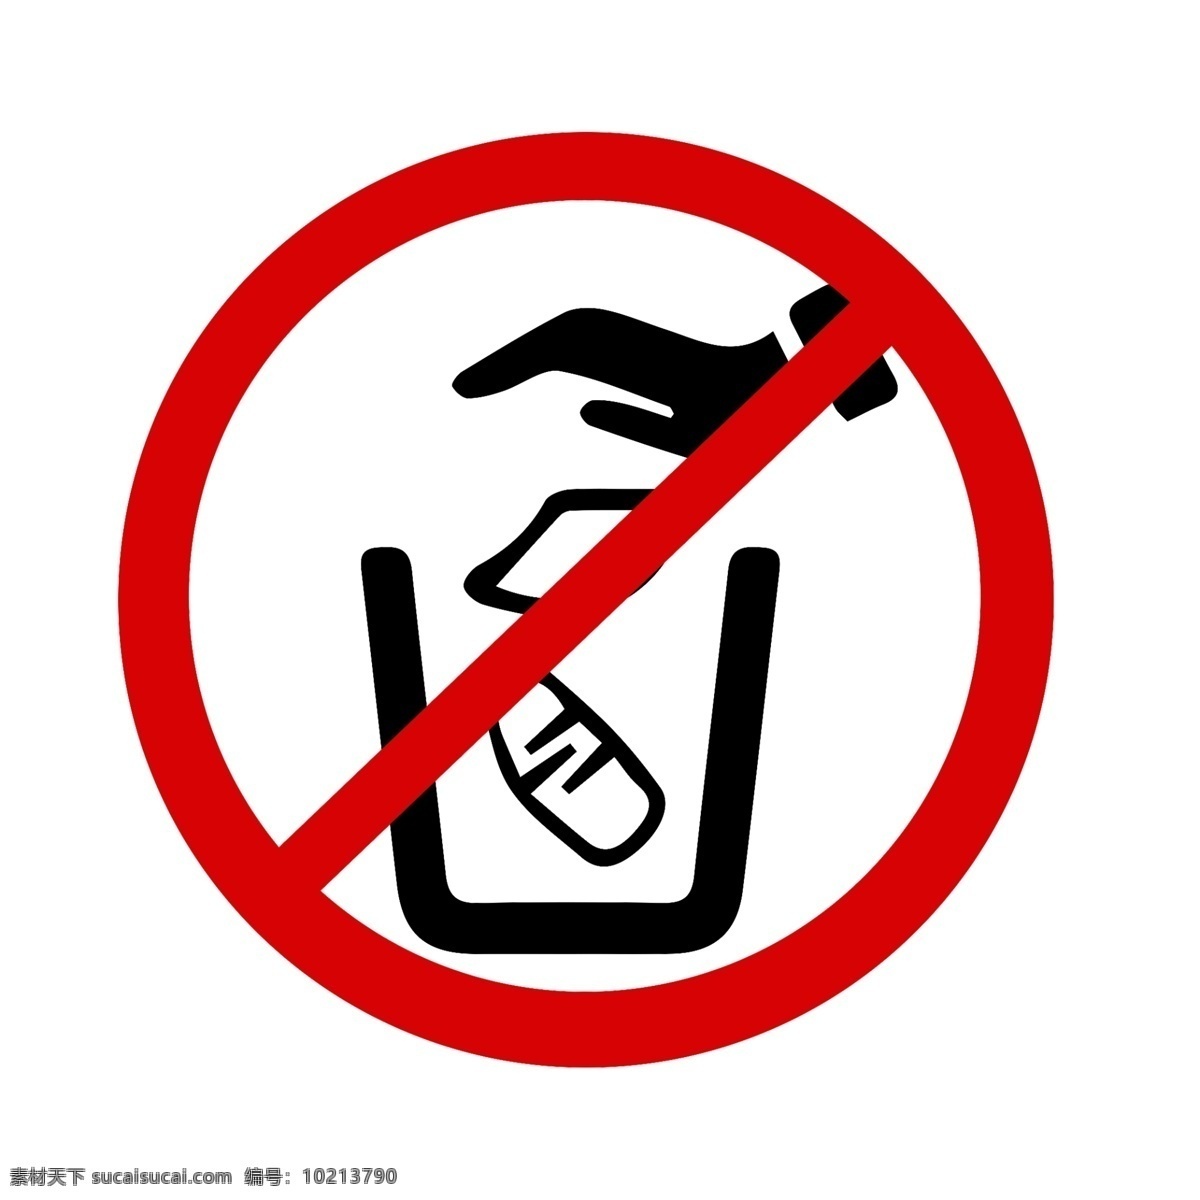 禁止 乱 丢 垃圾 适量 标志 垃圾分类 保护环境 垃圾桶 手 丢垃圾 环保